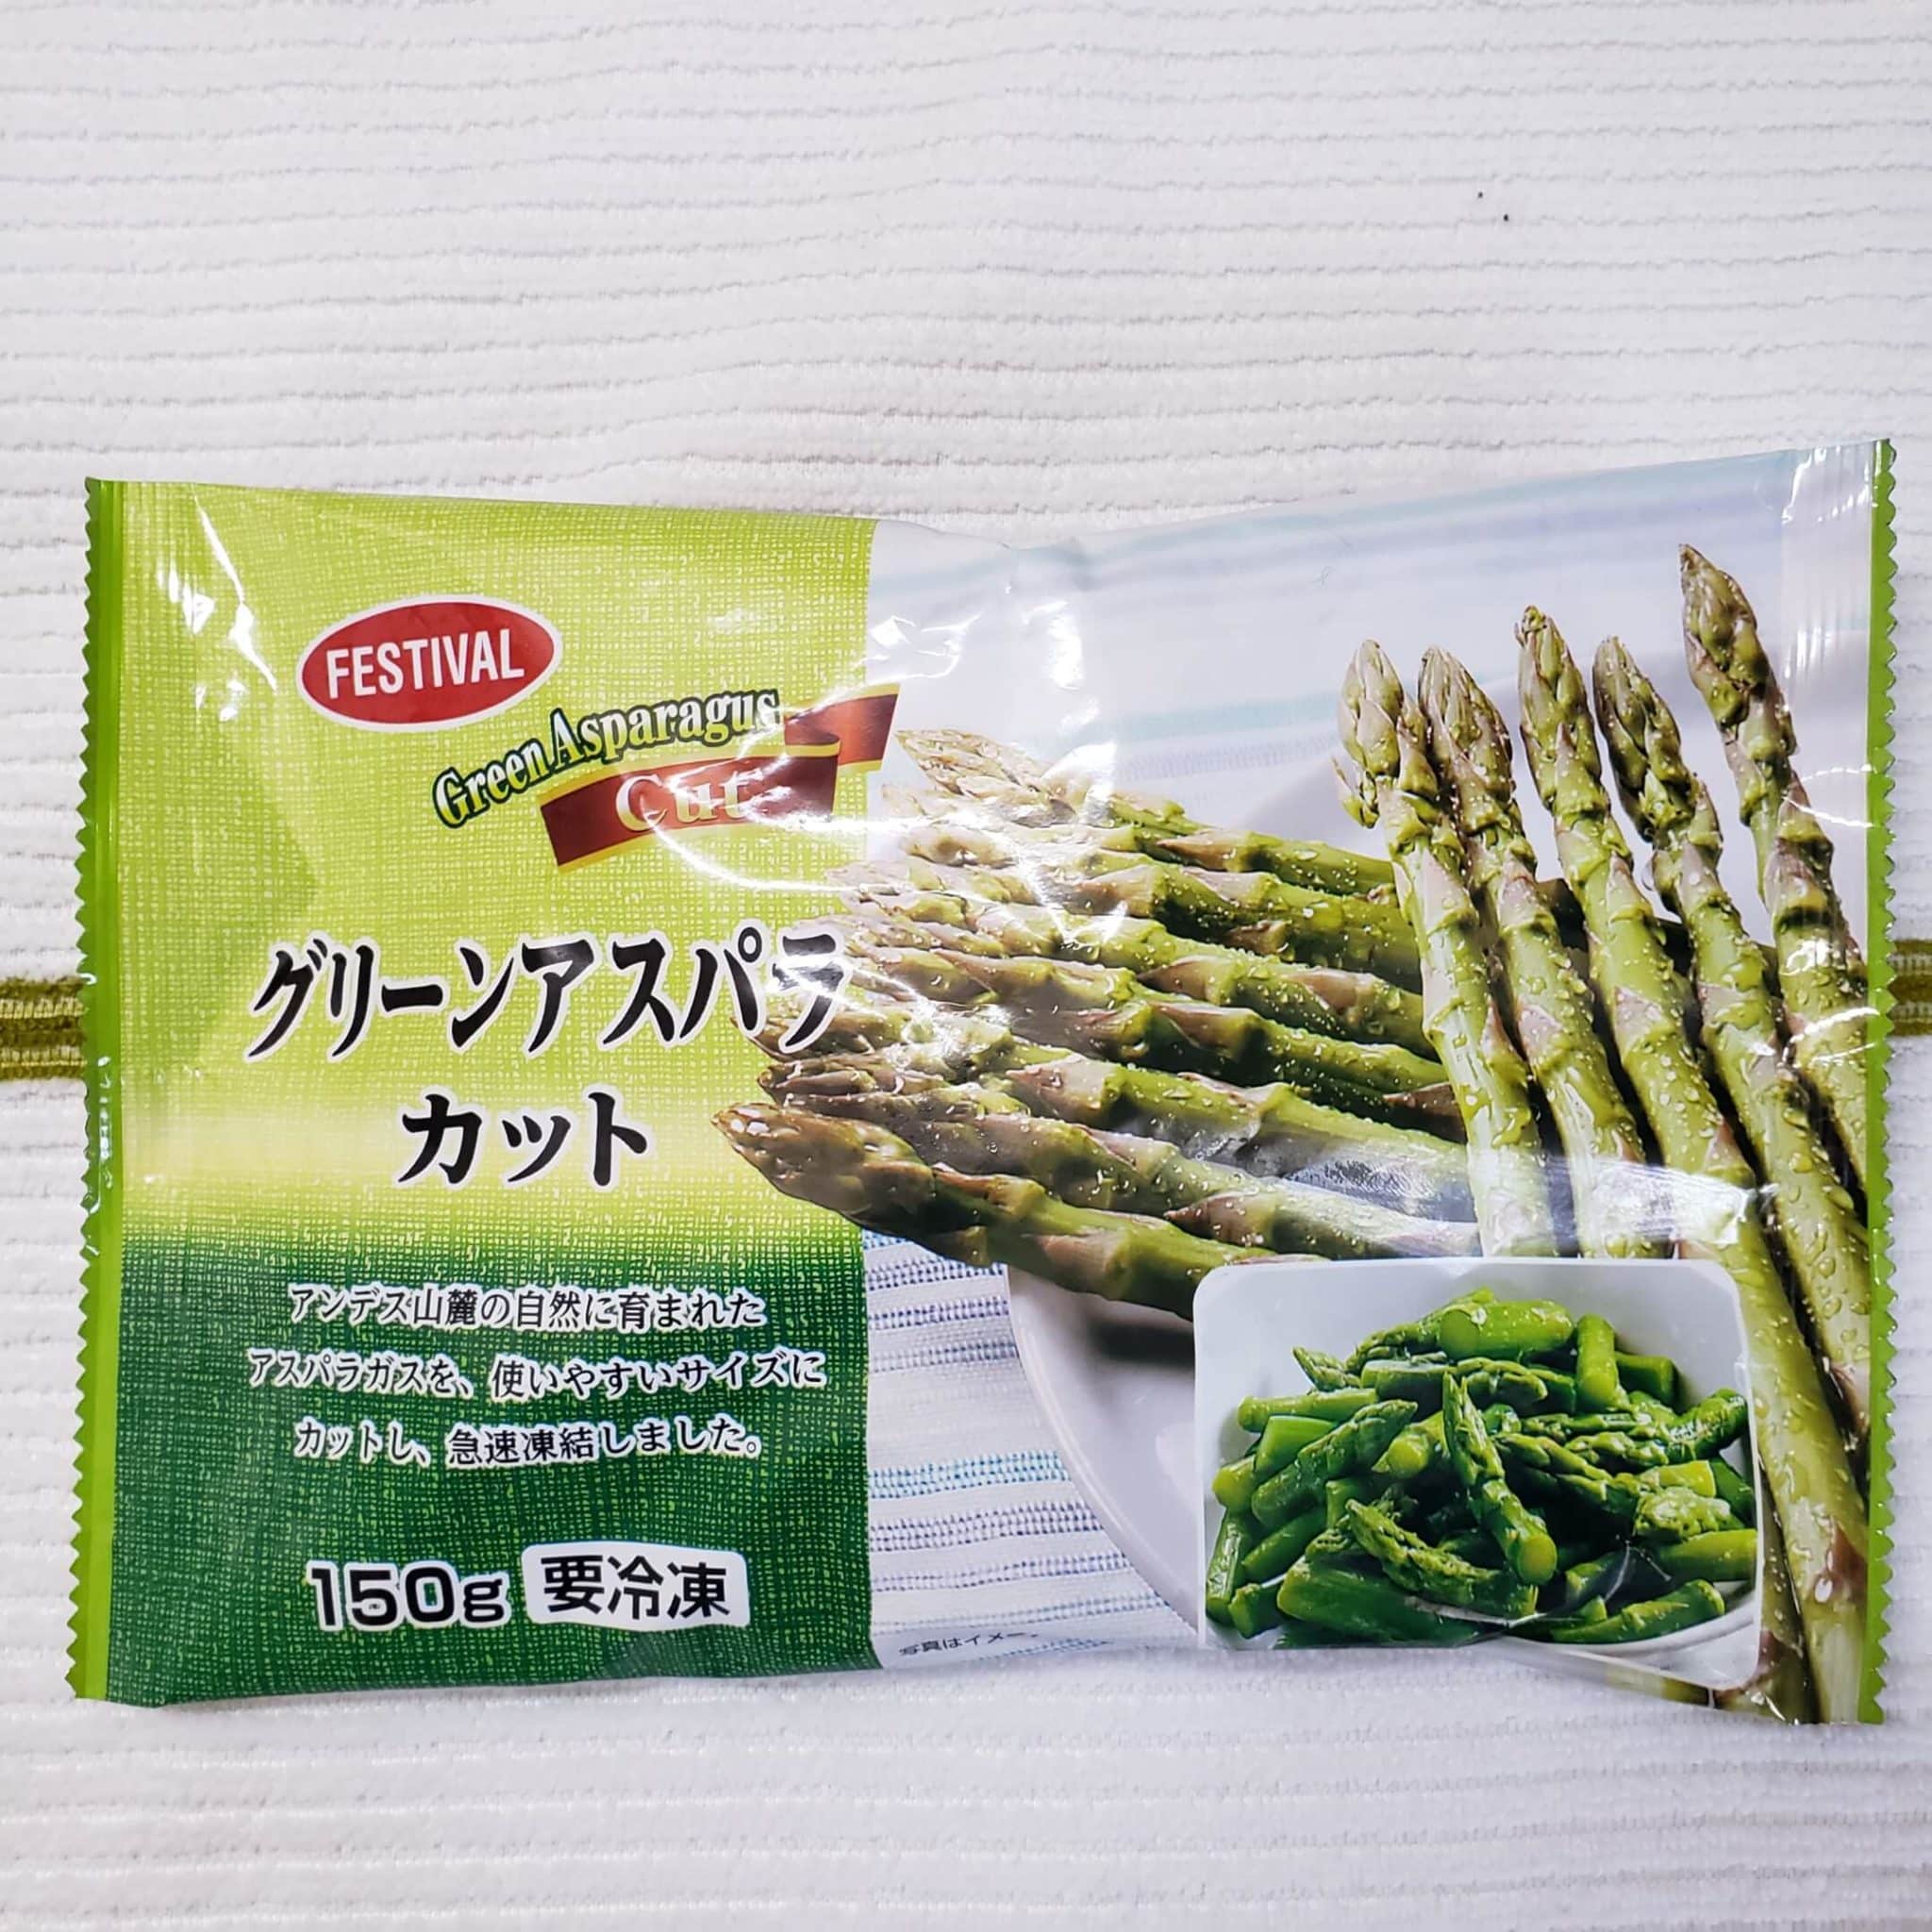 富士通商 Festival グリーンアスパラカットはサラダに便利 おすすめ冷凍食品情報サイト